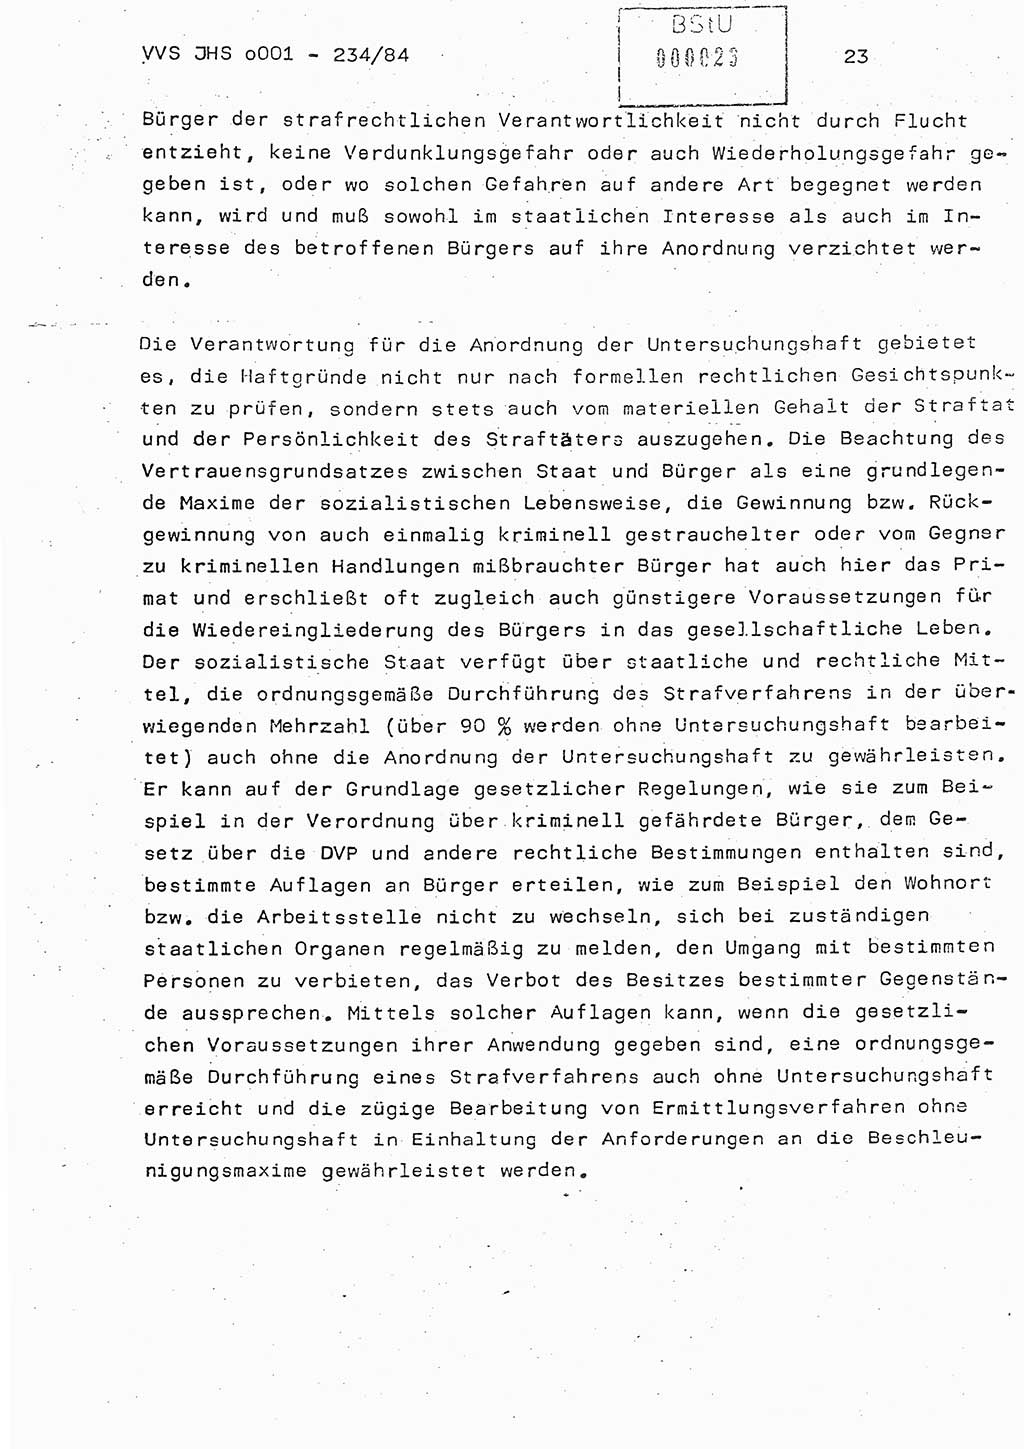 Dissertation Oberst Siegfried Rataizick (Abt. ⅩⅣ), Oberstleutnant Volkmar Heinz (Abt. ⅩⅣ), Oberstleutnant Werner Stein (HA Ⅸ), Hauptmann Heinz Conrad (JHS), Ministerium für Staatssicherheit (MfS) [Deutsche Demokratische Republik (DDR)], Juristische Hochschule (JHS), Vertrauliche Verschlußsache (VVS) o001-234/84, Potsdam 1984, Seite 23 (Diss. MfS DDR JHS VVS o001-234/84 1984, S. 23)